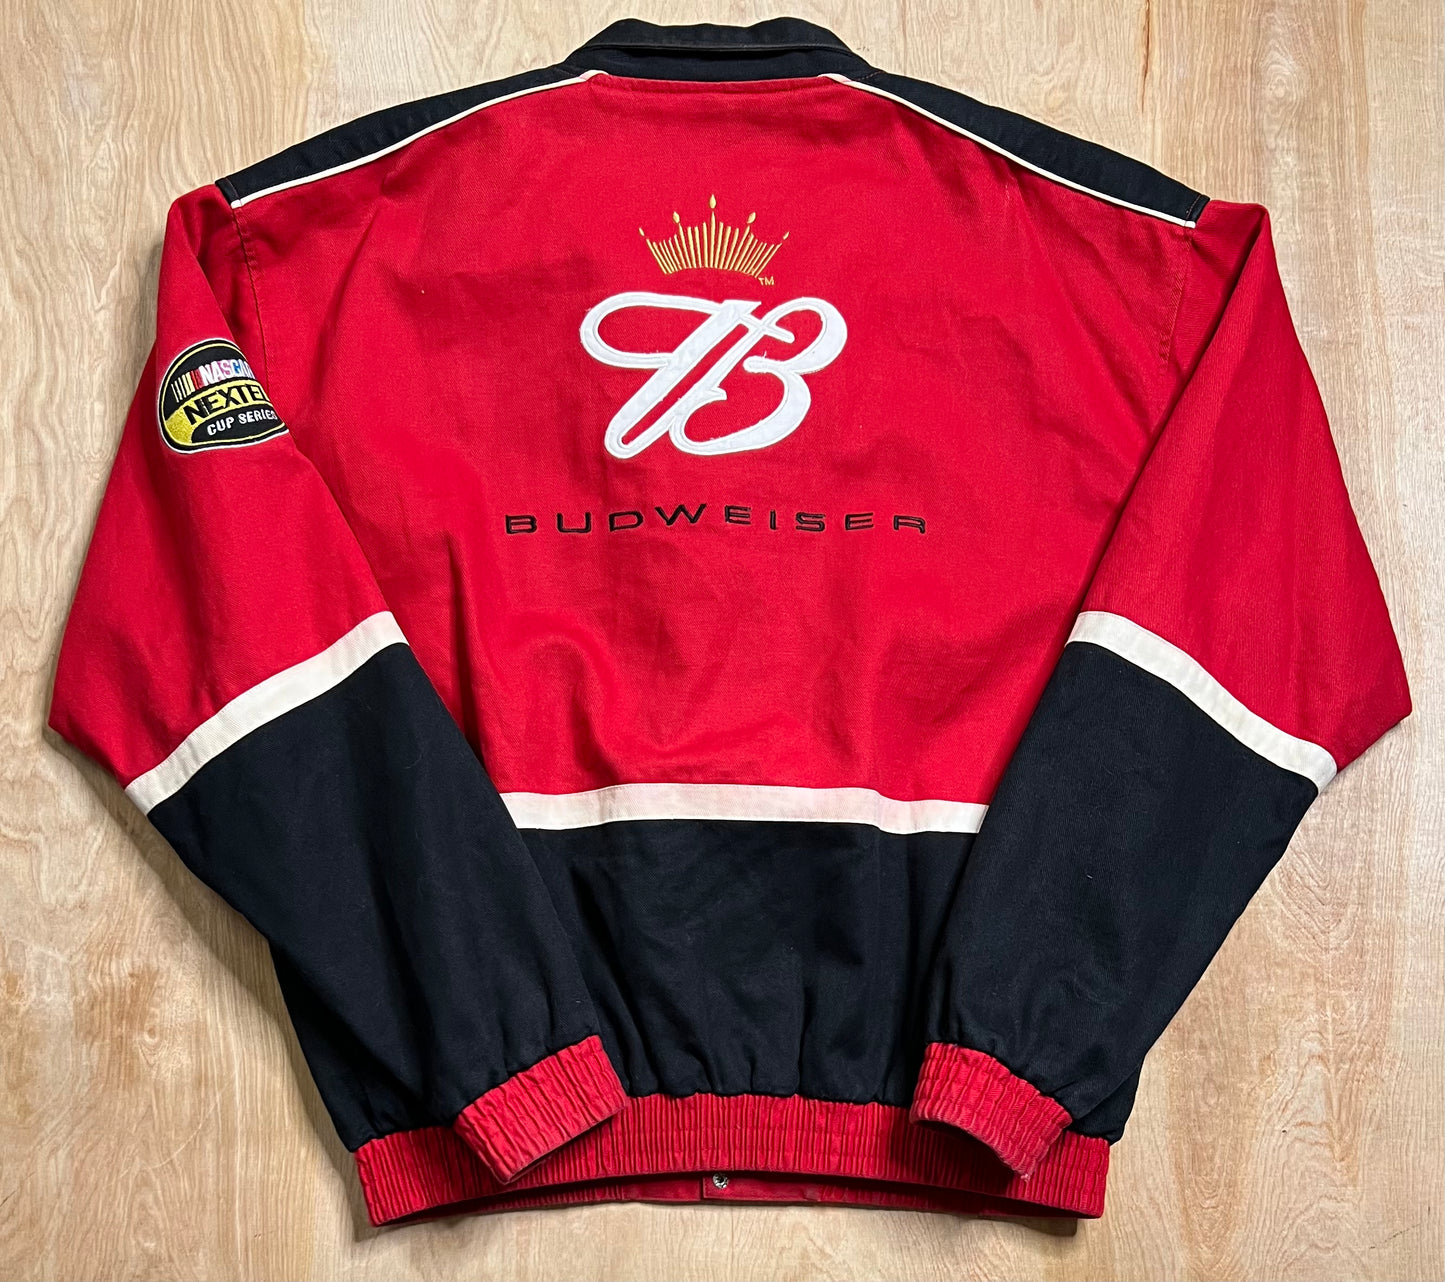 Vintage Nascar Budweiser Dale Earnhardt Jr Racing Jacket